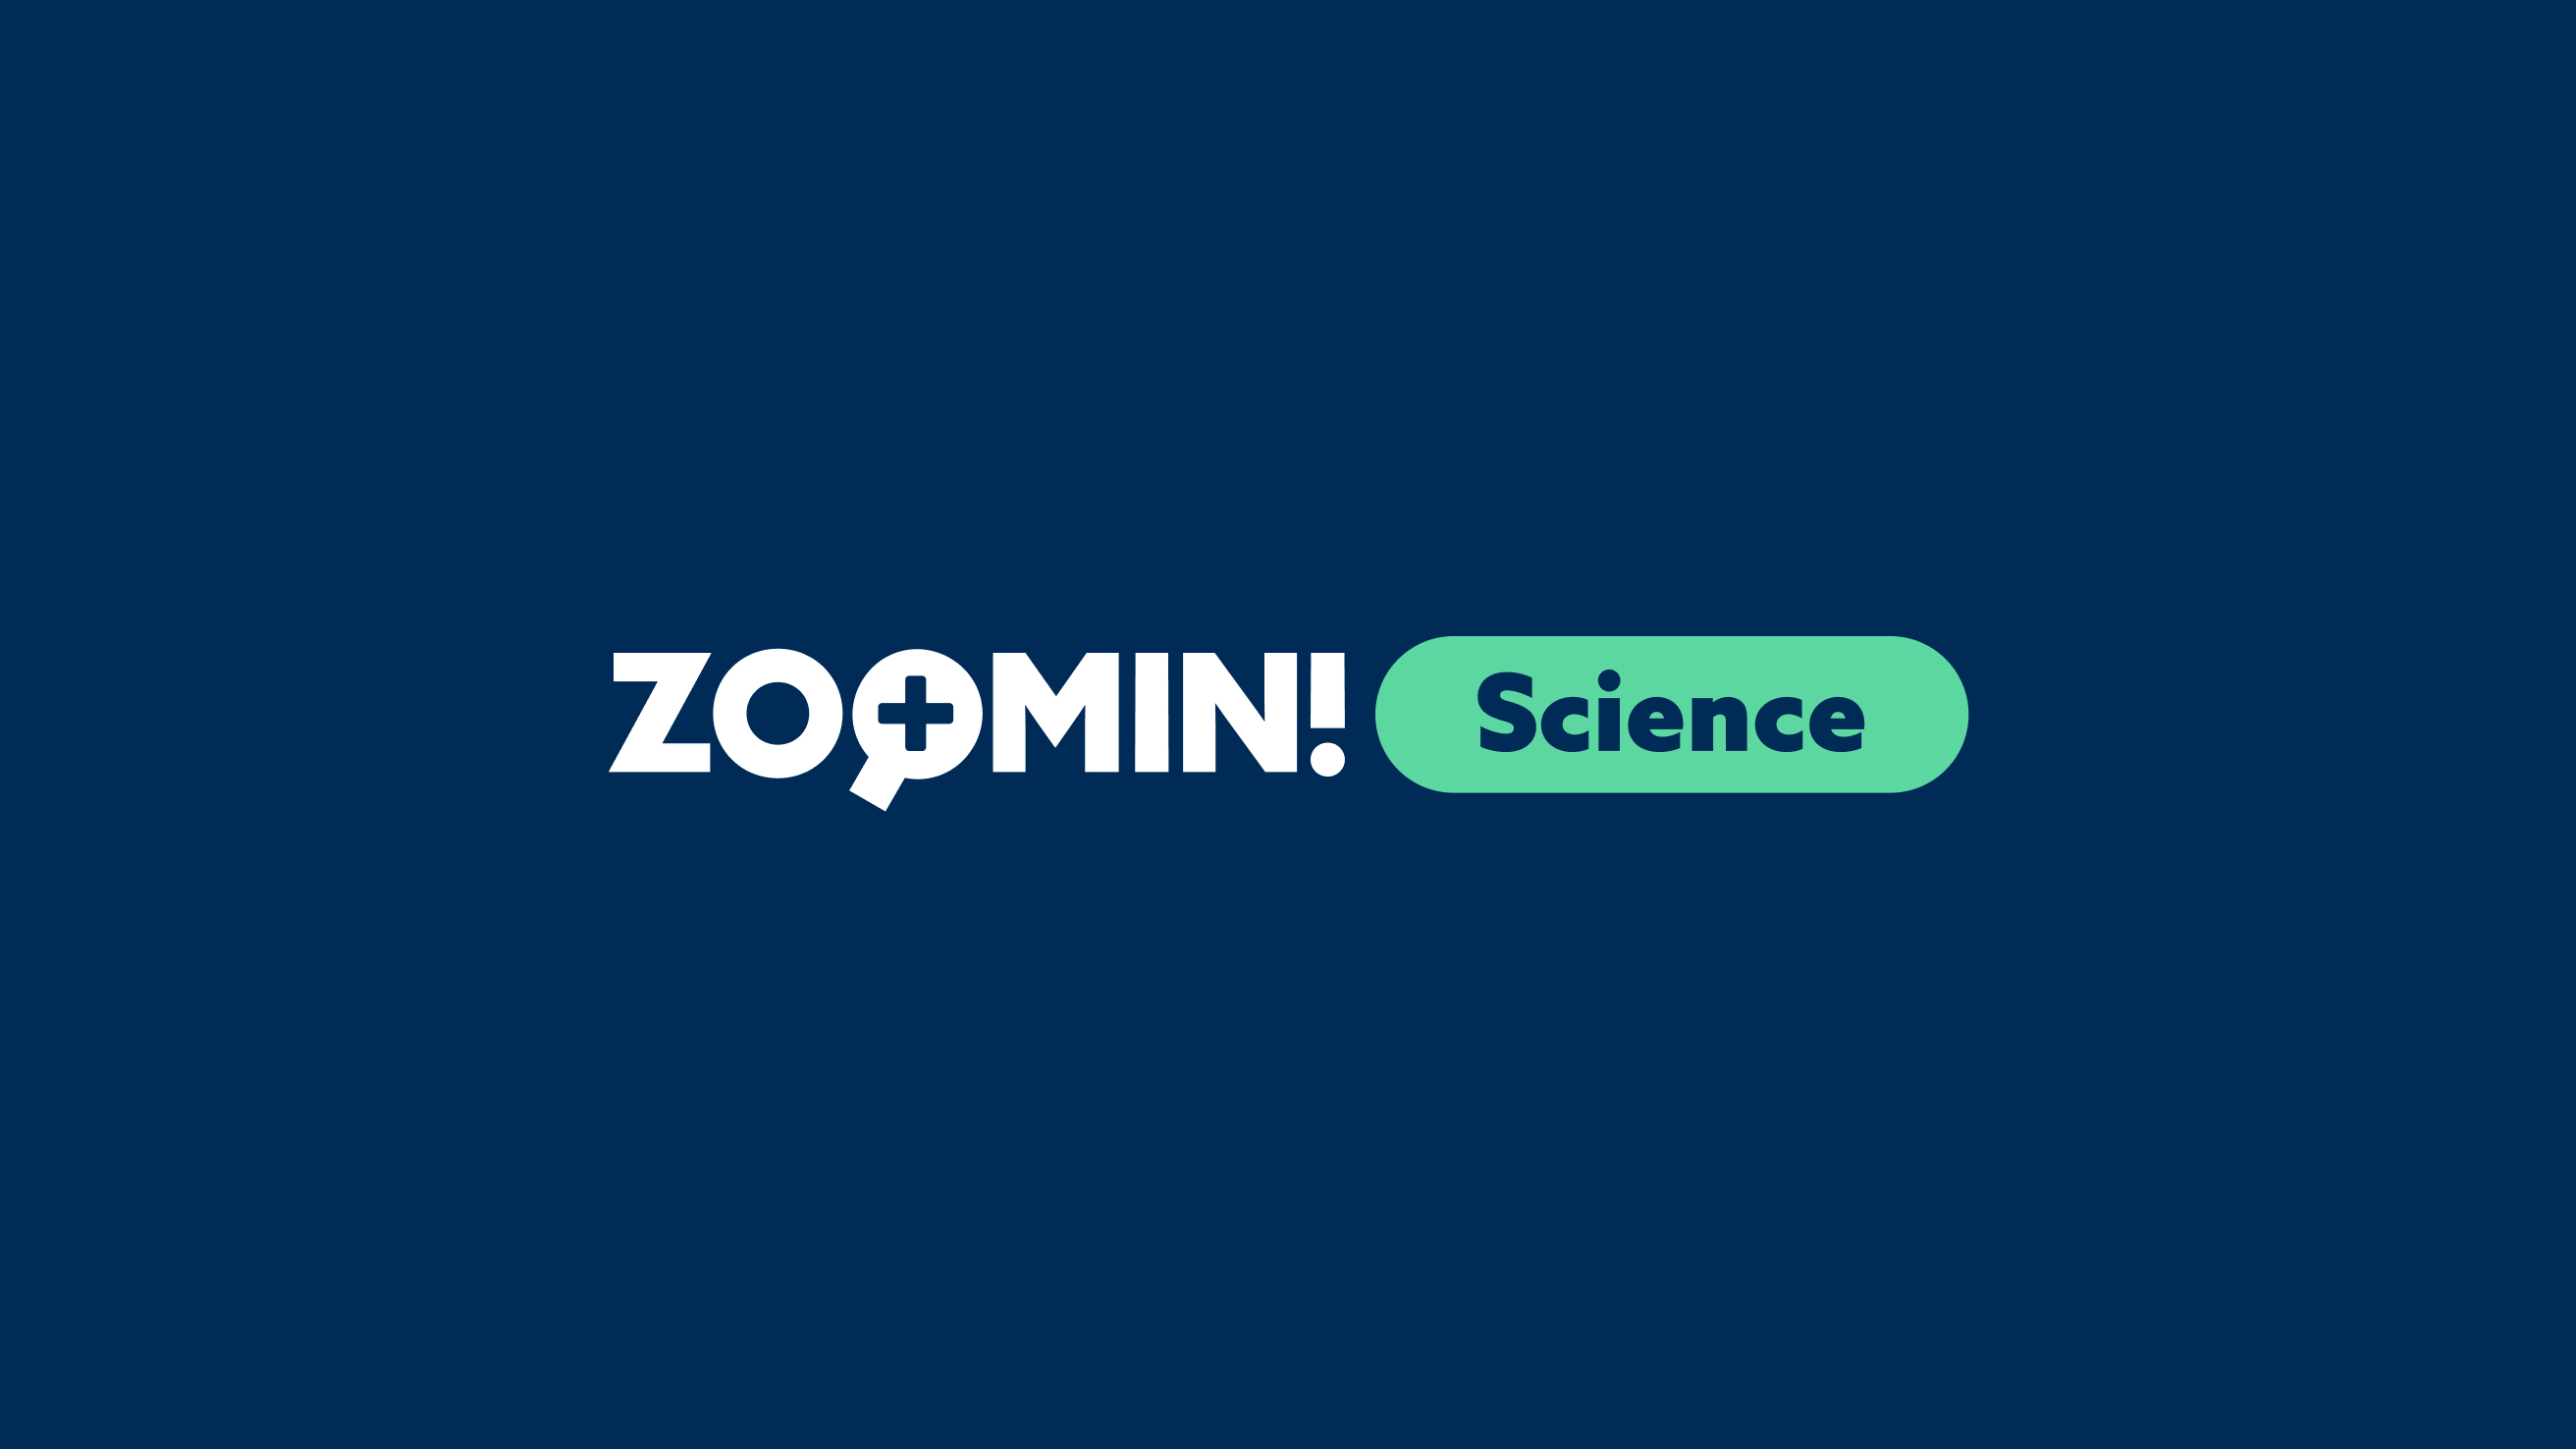 EDC zoom in science logo